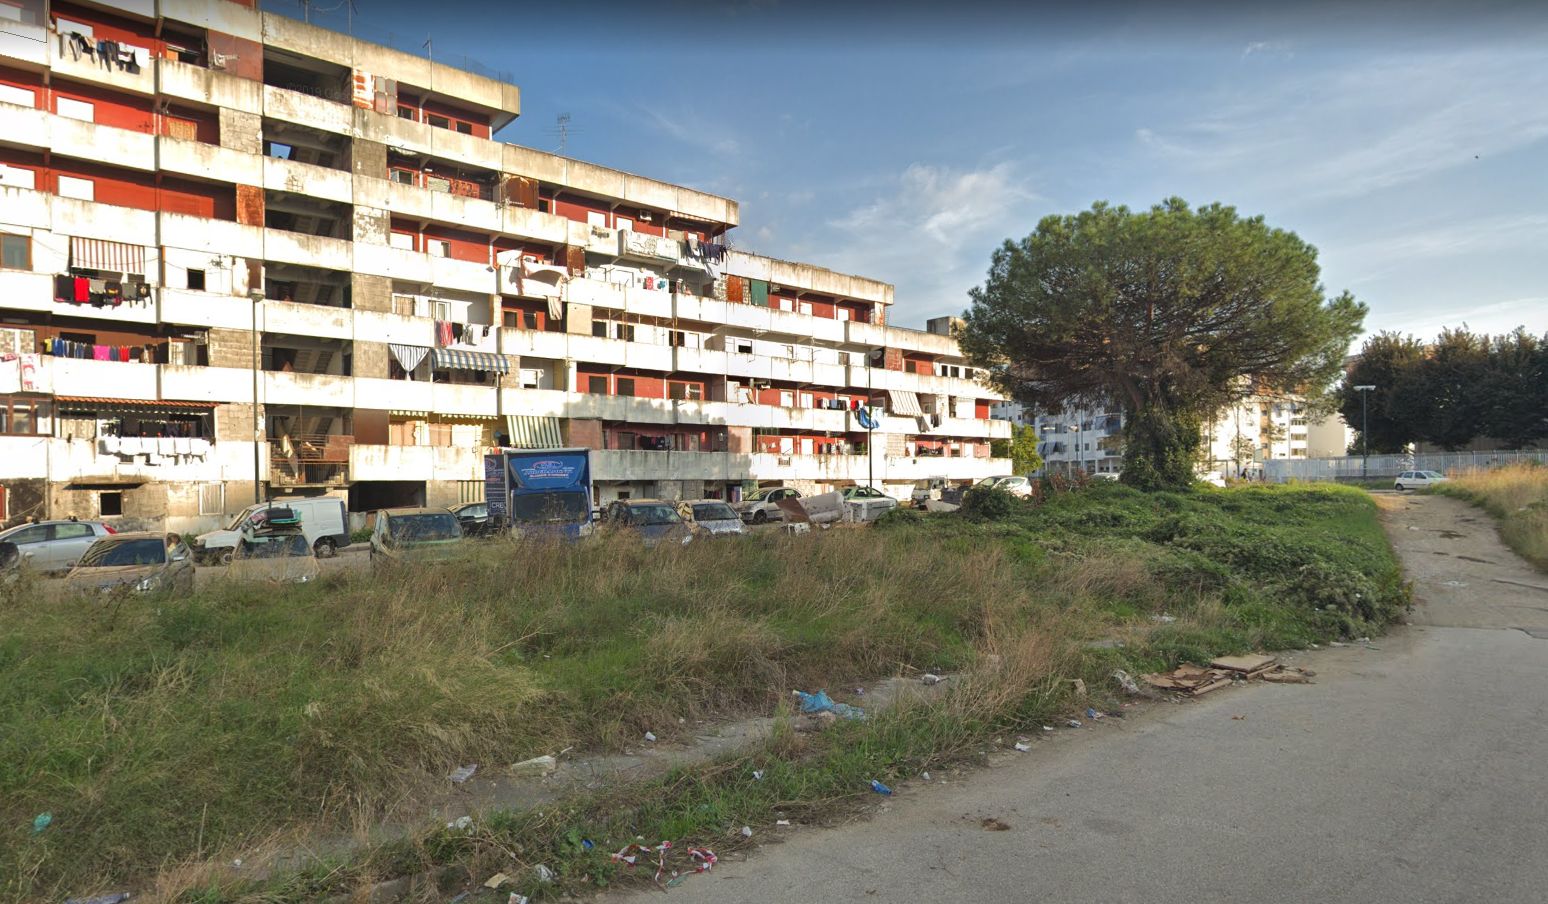 Najnebezpečnejšie sídlisko v Európe: Neapolská Scampia je nasiaknutá krvou, drogami a prostitúciou